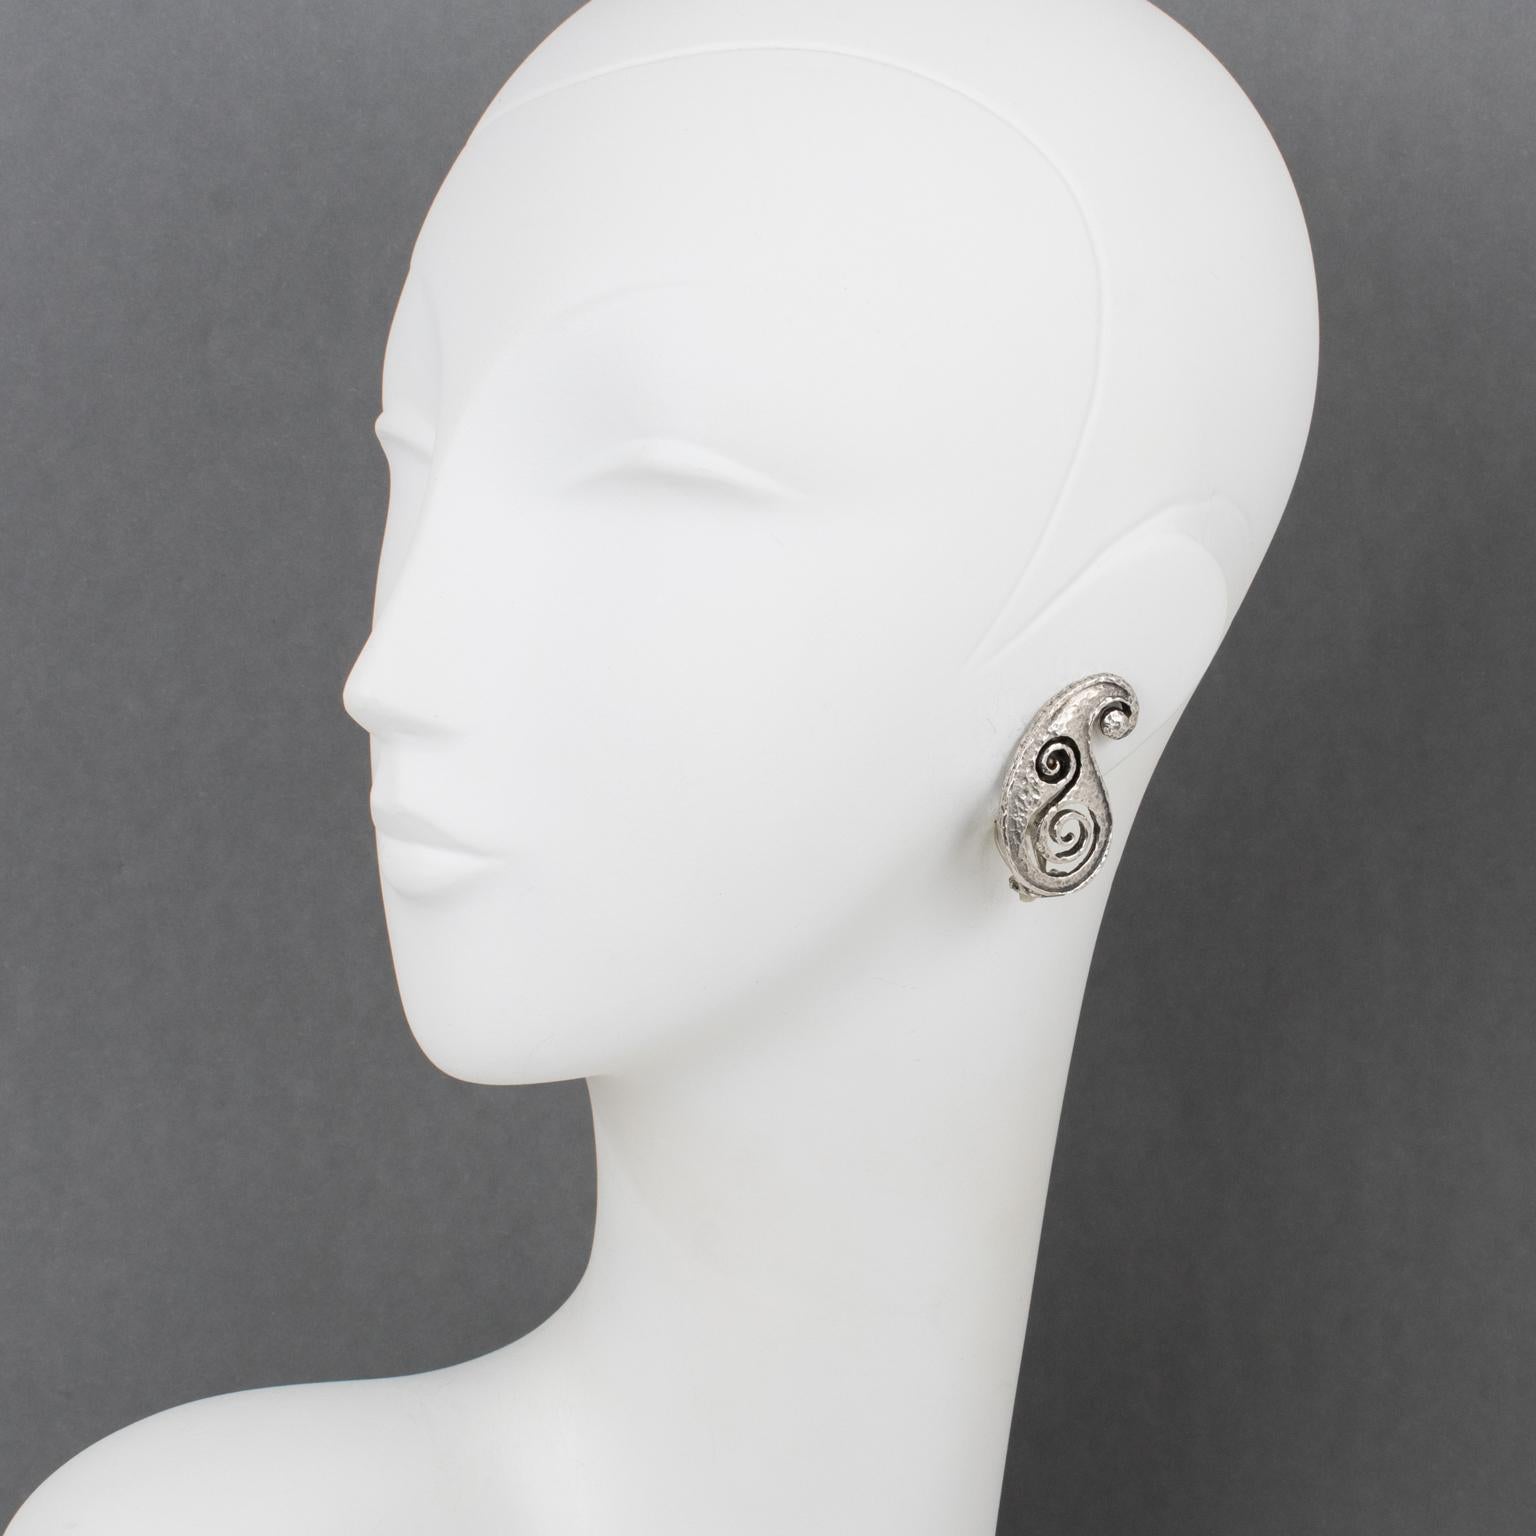 Paco Rabanne Paris a conçu ces boucles d'oreilles à clip en métal futuriste dans les années 1990. Le design présente une forme de 